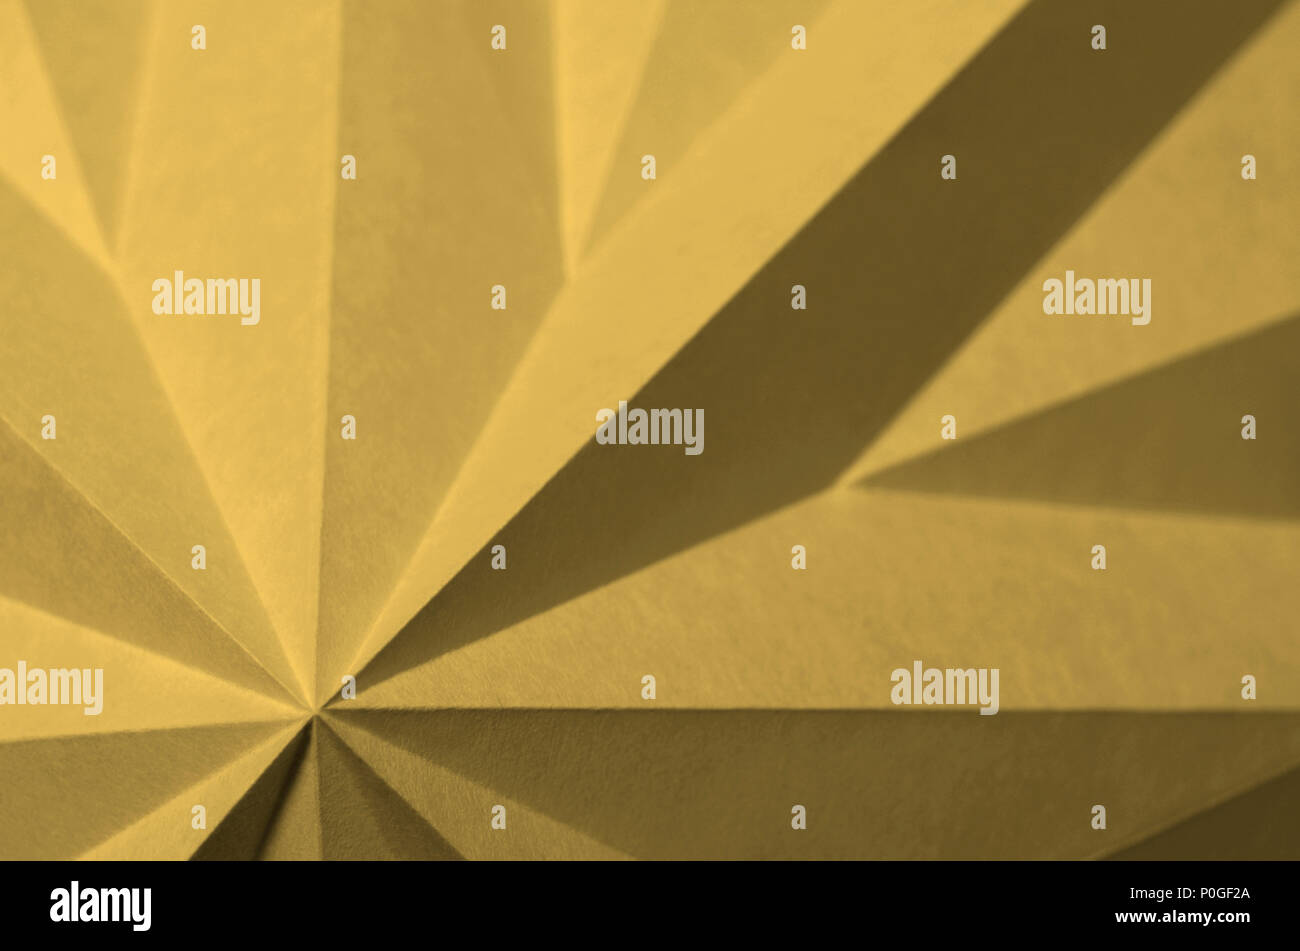 Fondo de pantalla abstracto amarillo Origami, bambú; Pantone 14-0740. Elemento de diseño gráfico monocromo angulares. Foto de stock